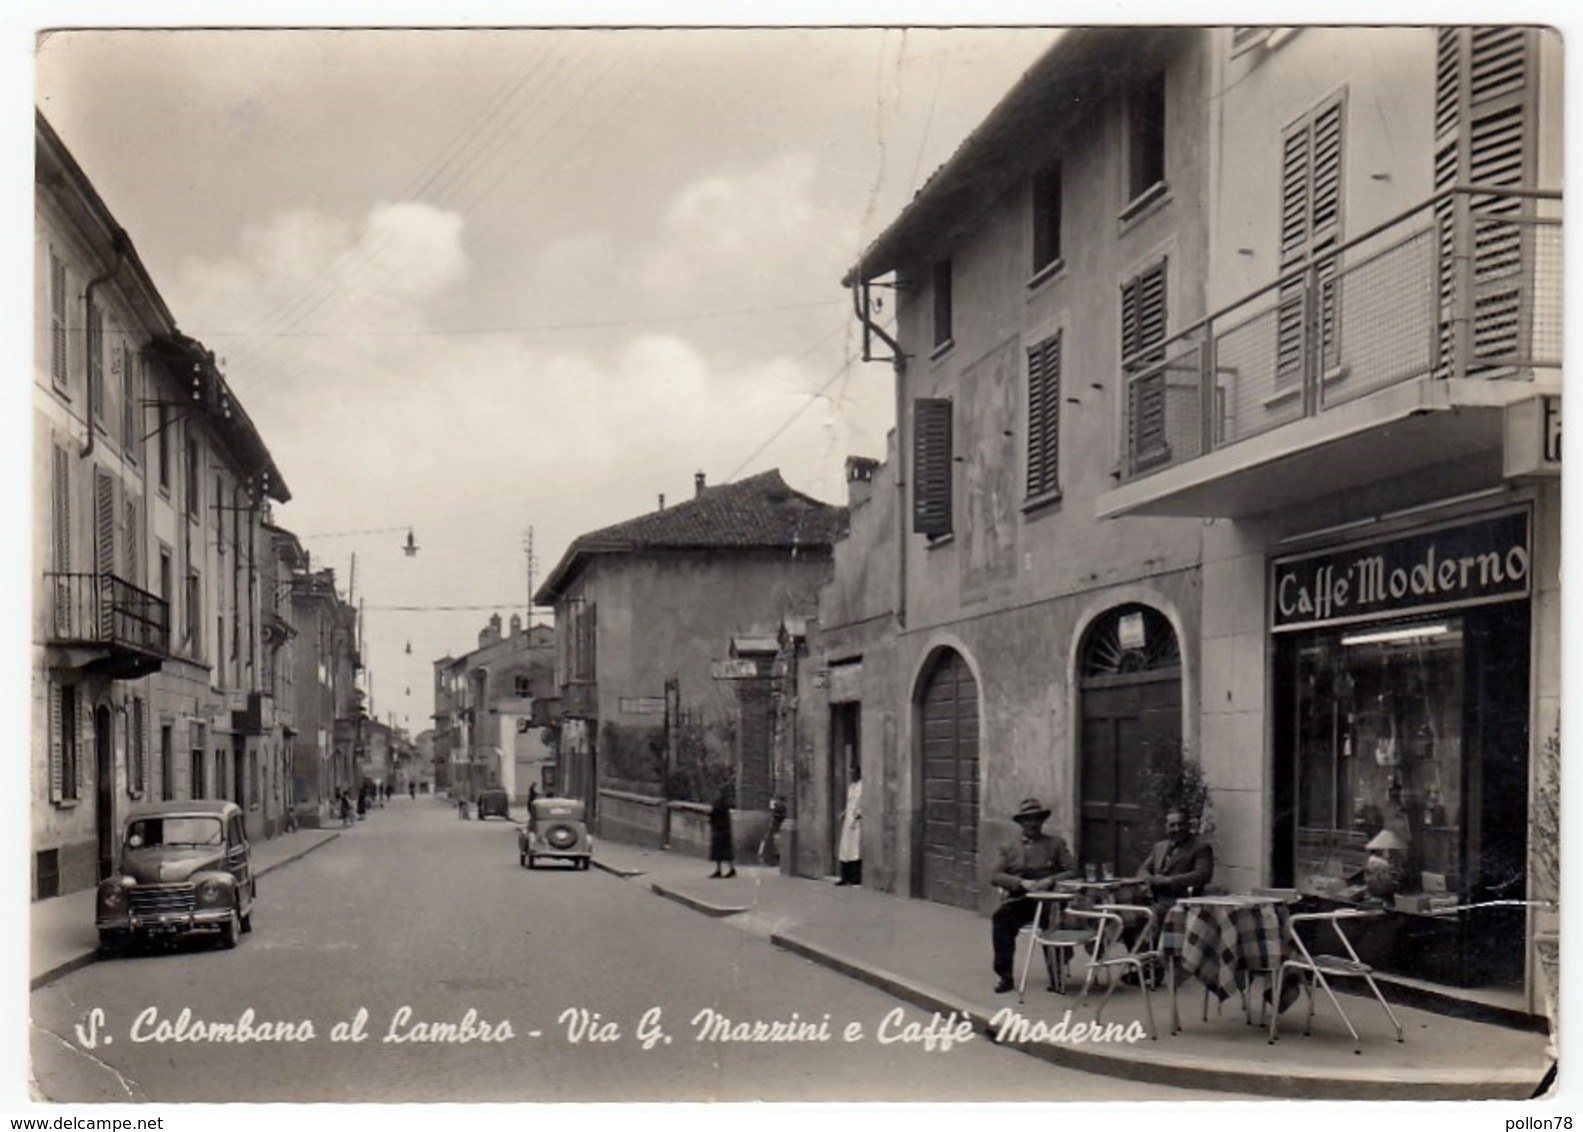 S. COLOMBANO AL LAMBRO - VIA G. MAZZINI E CAFFE' MODERNO - MILANO 1953 - AUTOMOBILI - CARS - FIAT GIARDINETTA - Milano